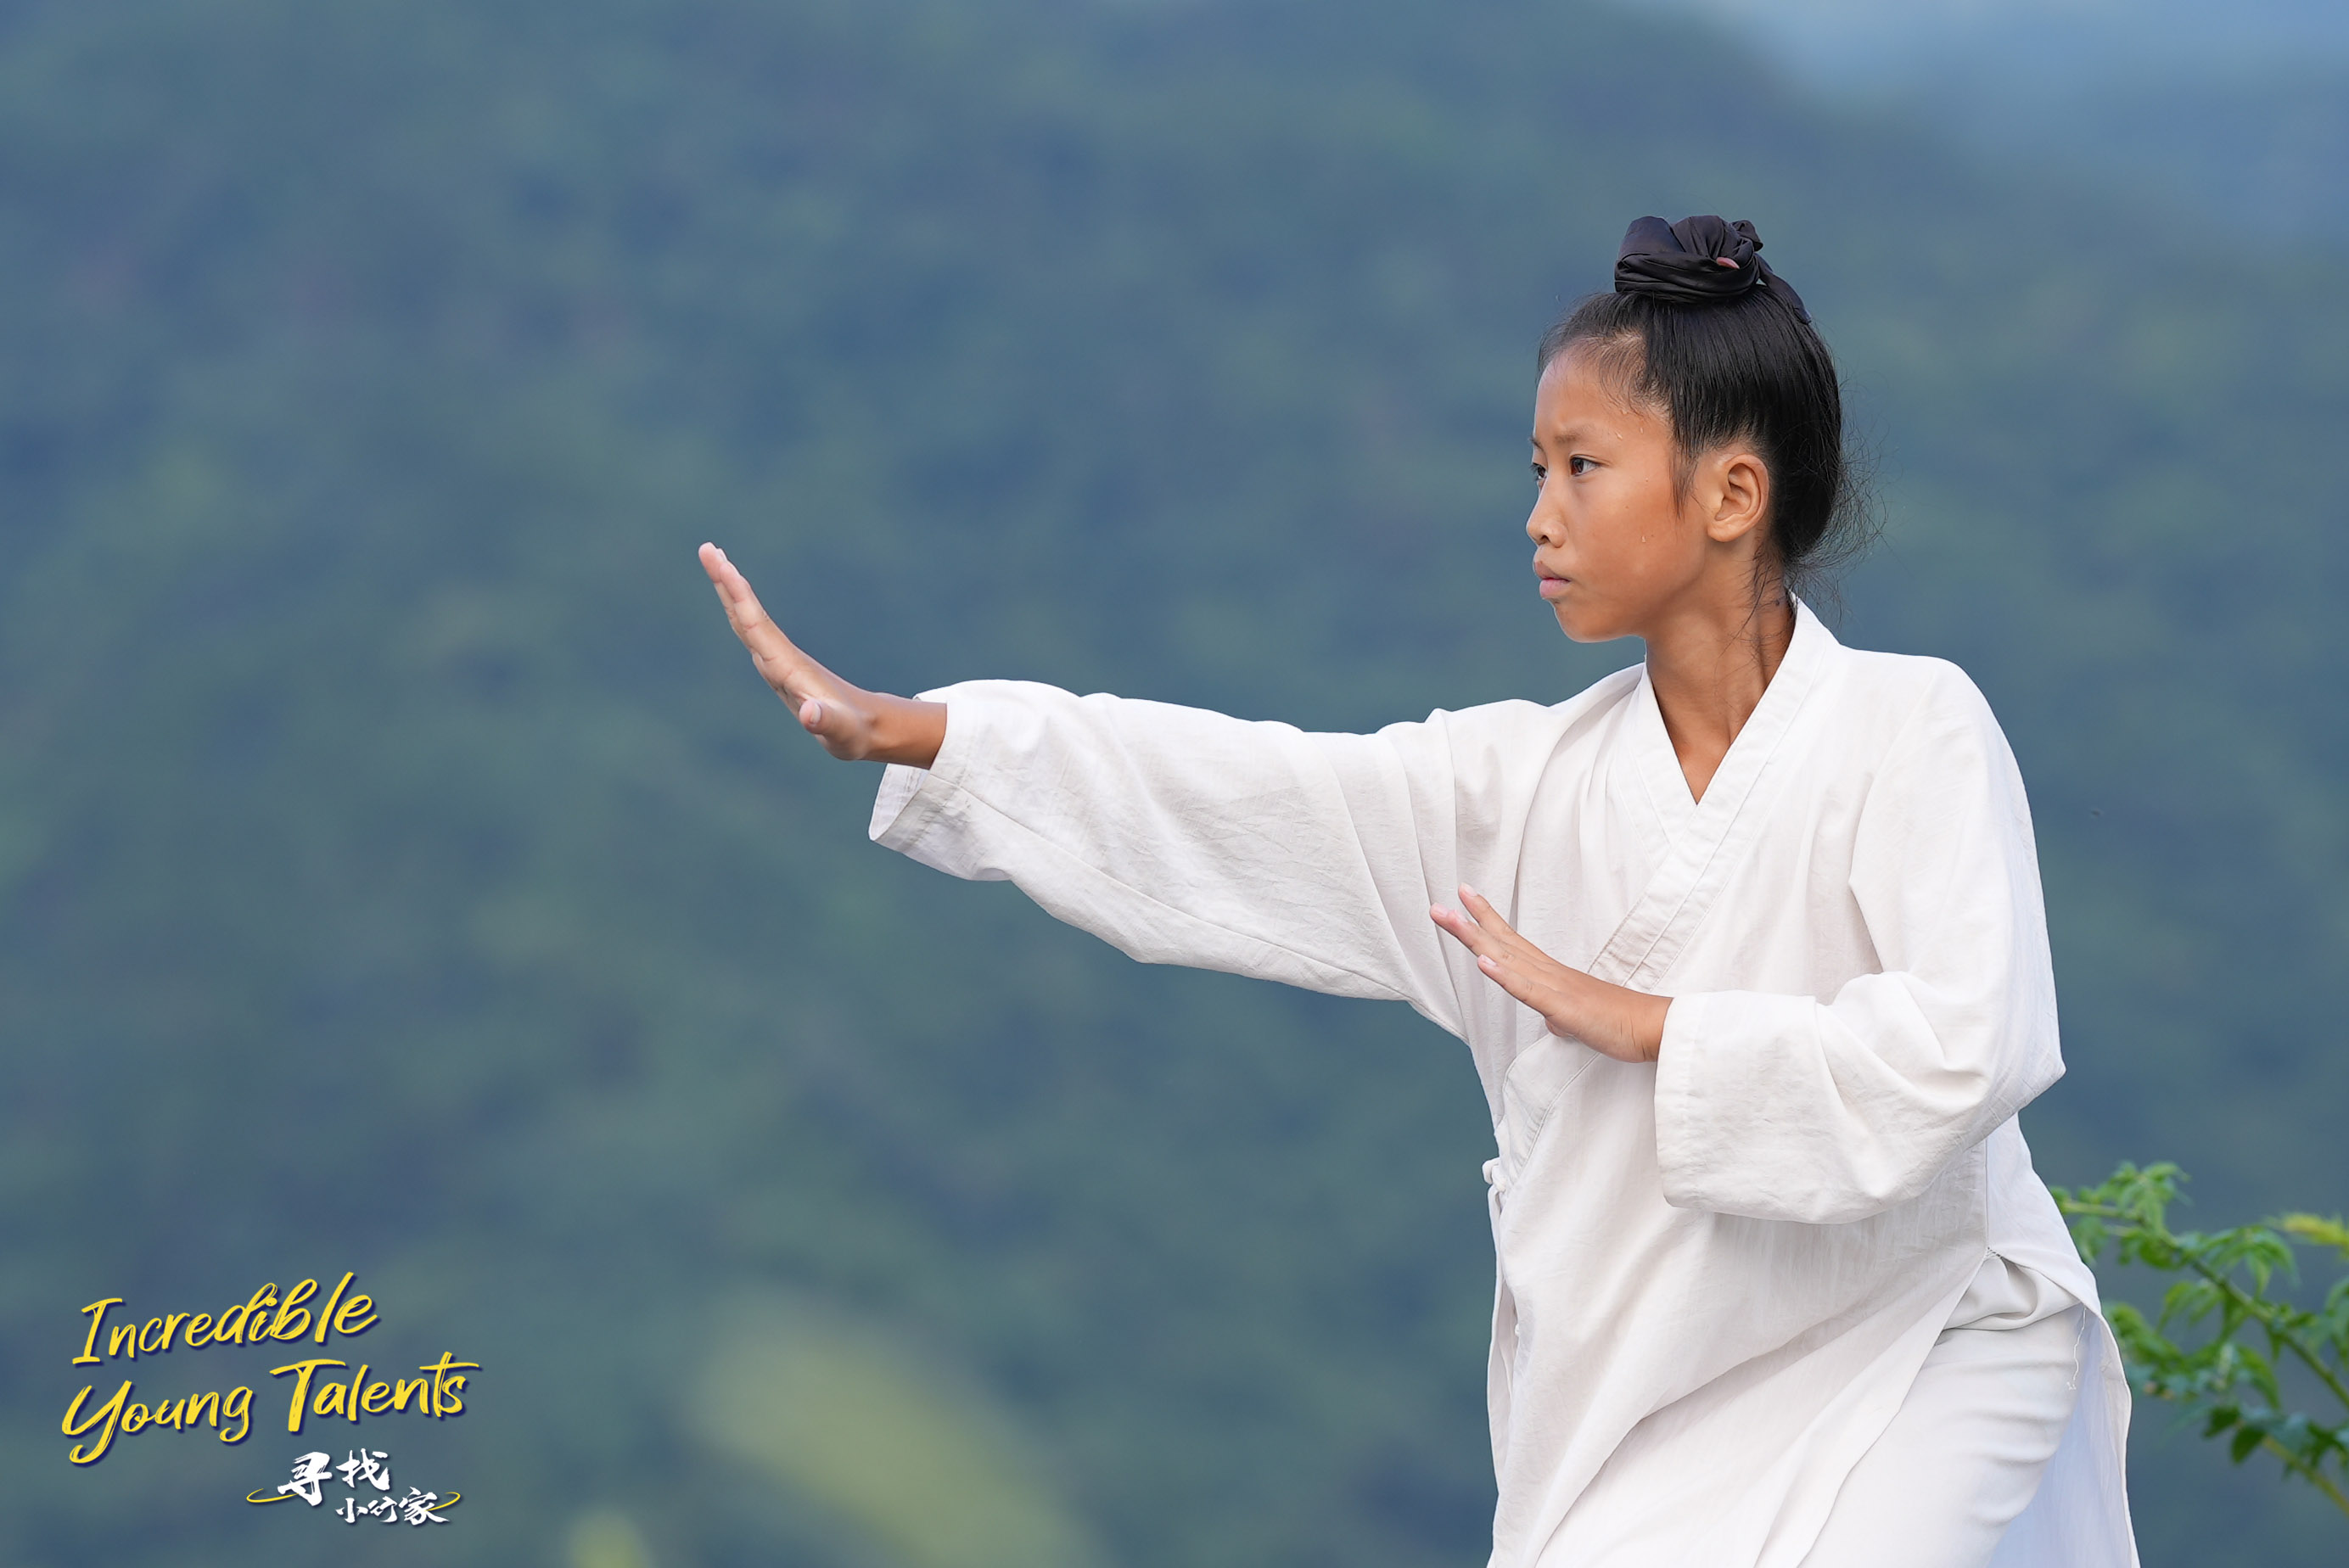 Wudang kung fu young talent Li Weimu practices Tai Chi. /CGTN